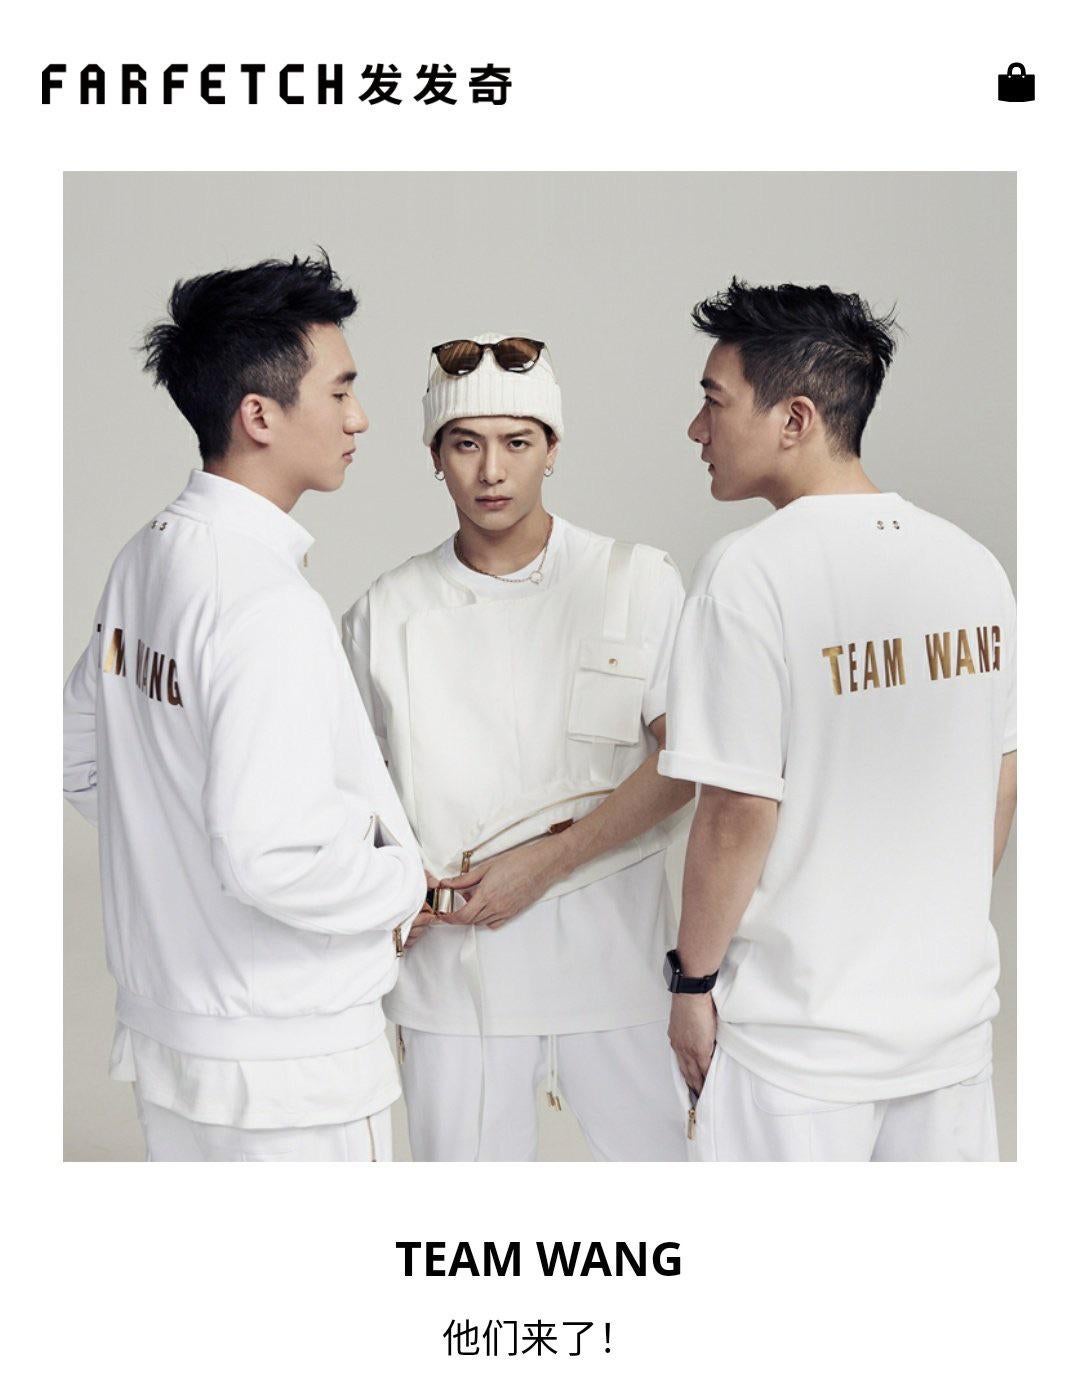 Jackson (nhóm GOT7) và thương hiệu thời trang TEAM WANG Design của mình.